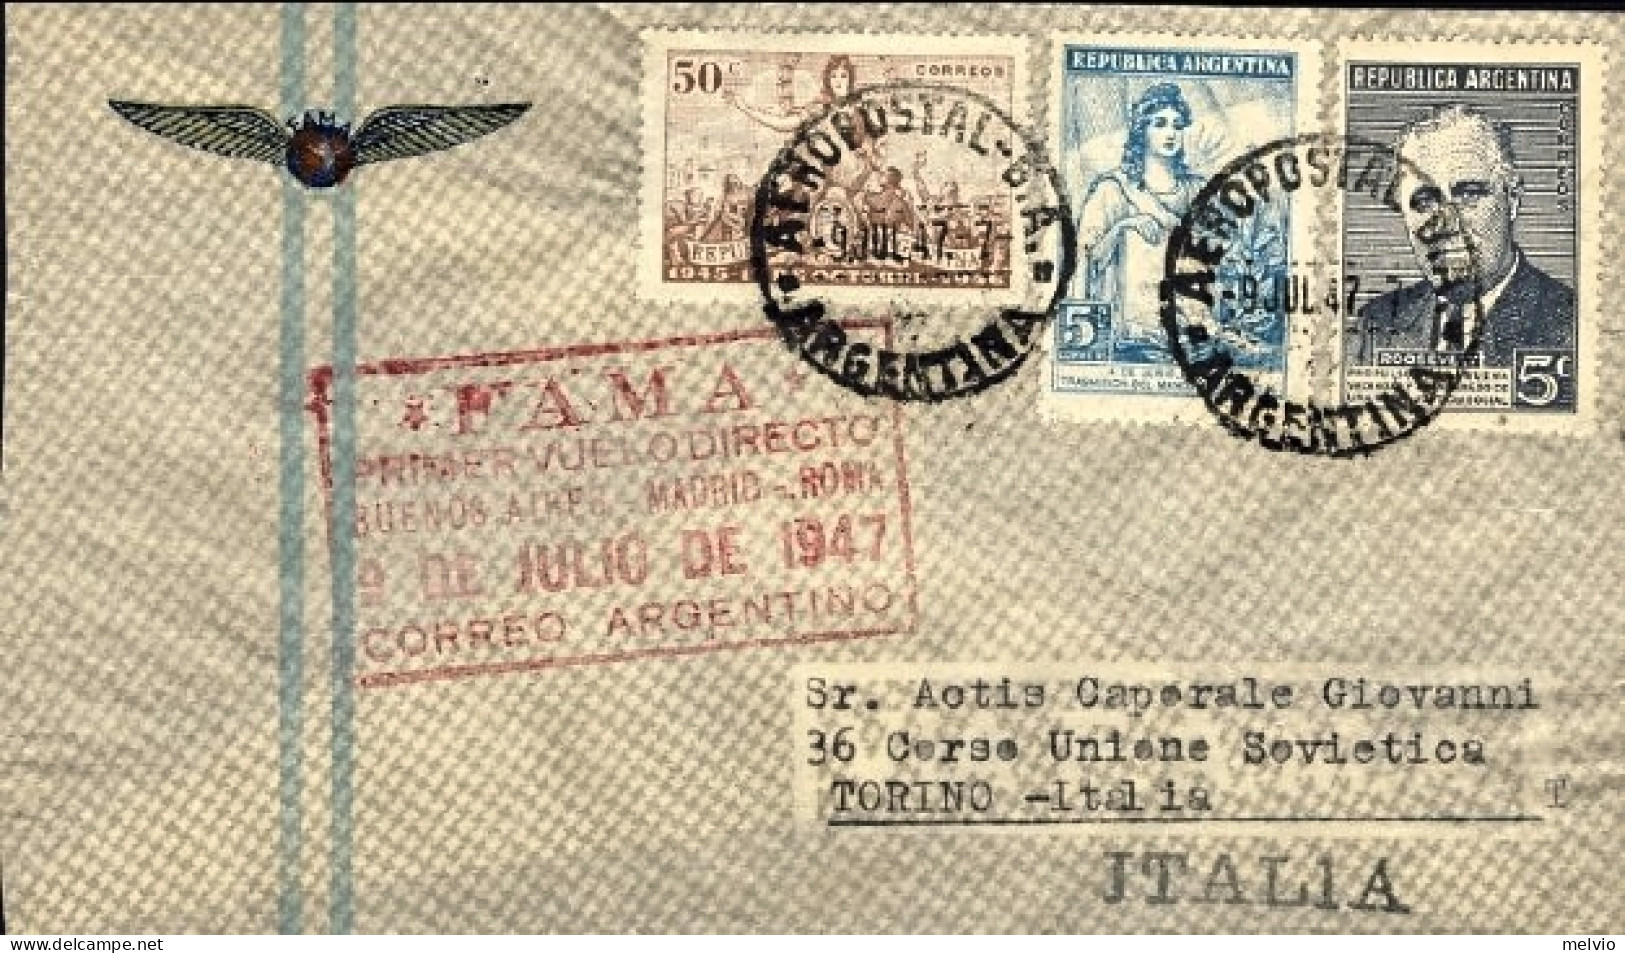 1947-Argentina I^volo Diretto Senza Scalo Per L'Europa F.A.M.A.  Buenos Aires Ro - Airmail